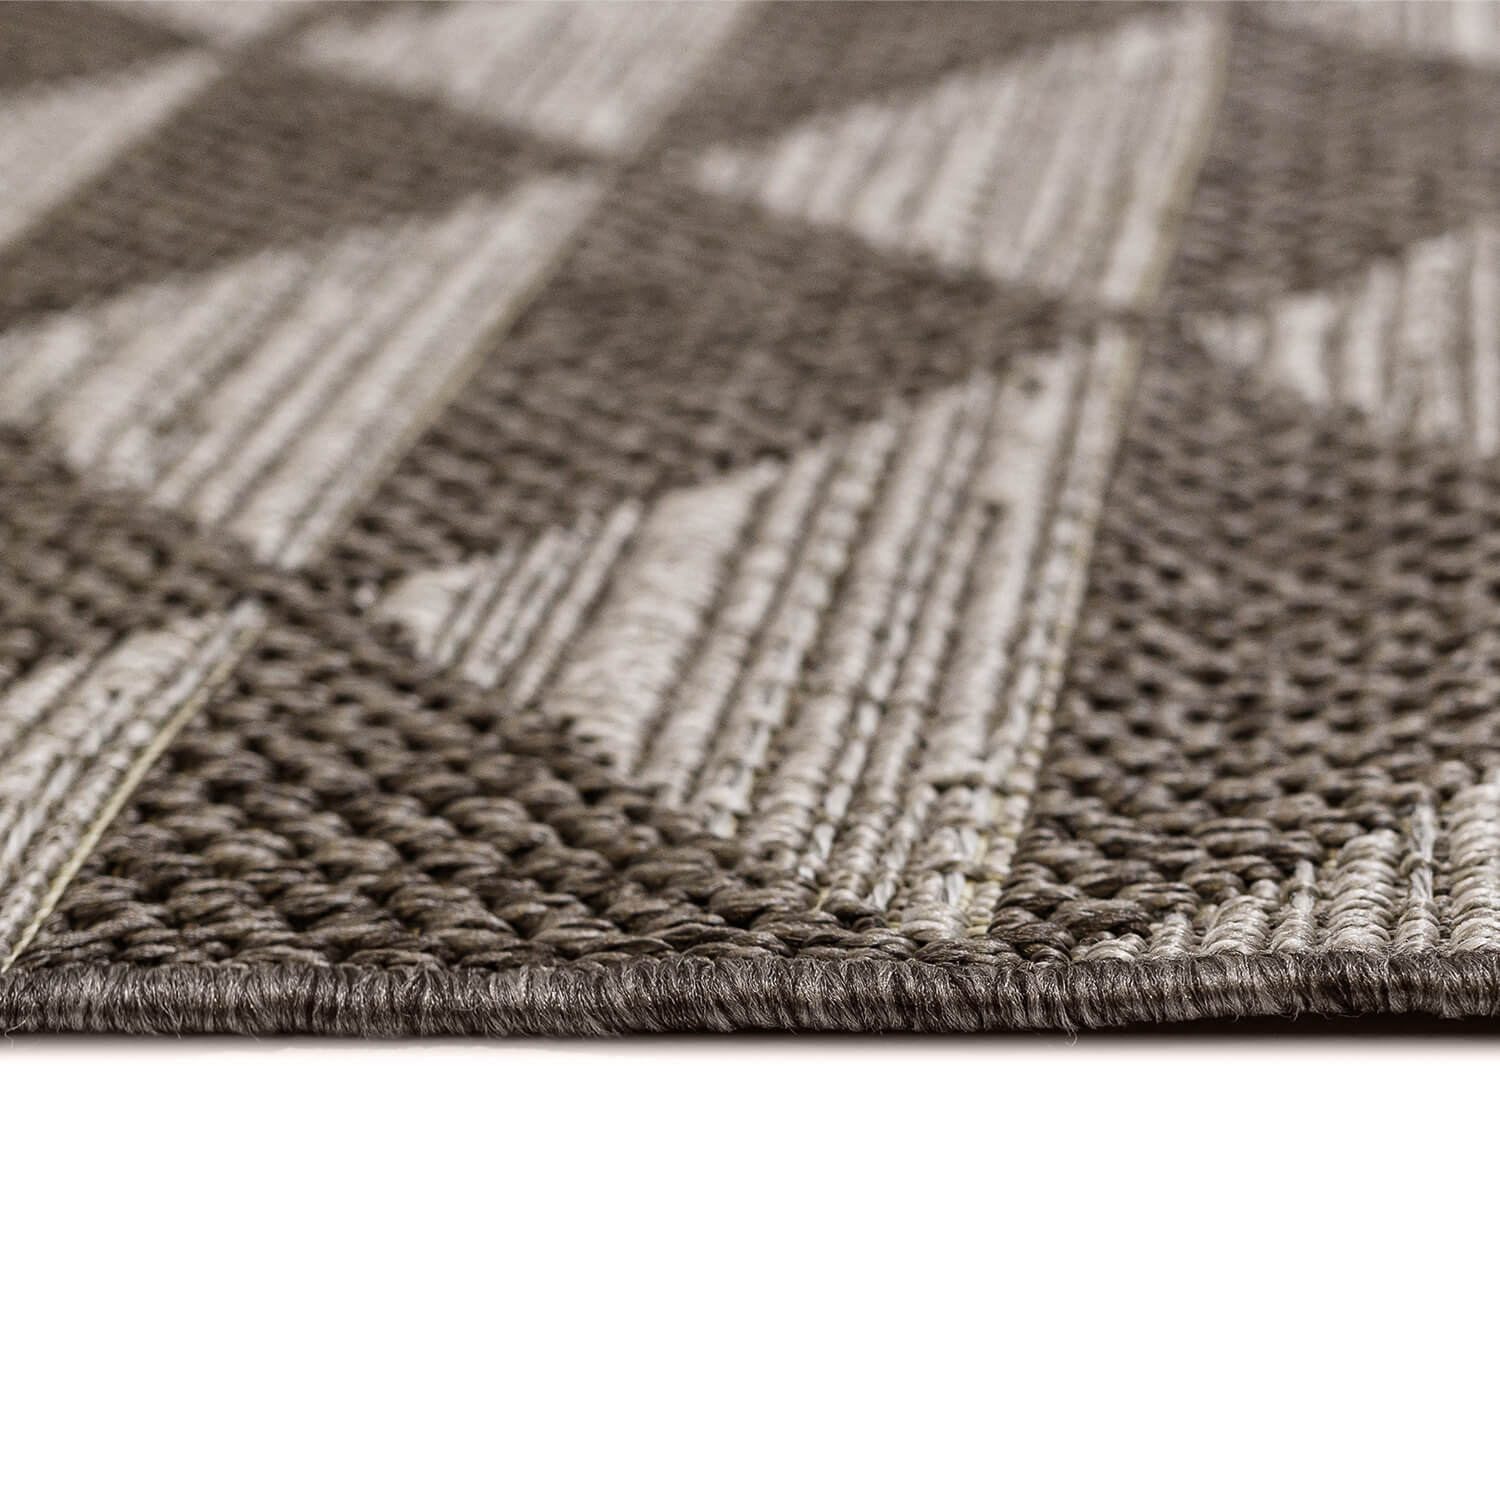 Tapete marrón con diseño de triángulos, texturizado con fibras que imitan el yute de estilo artesanal (Grace 39657-387)